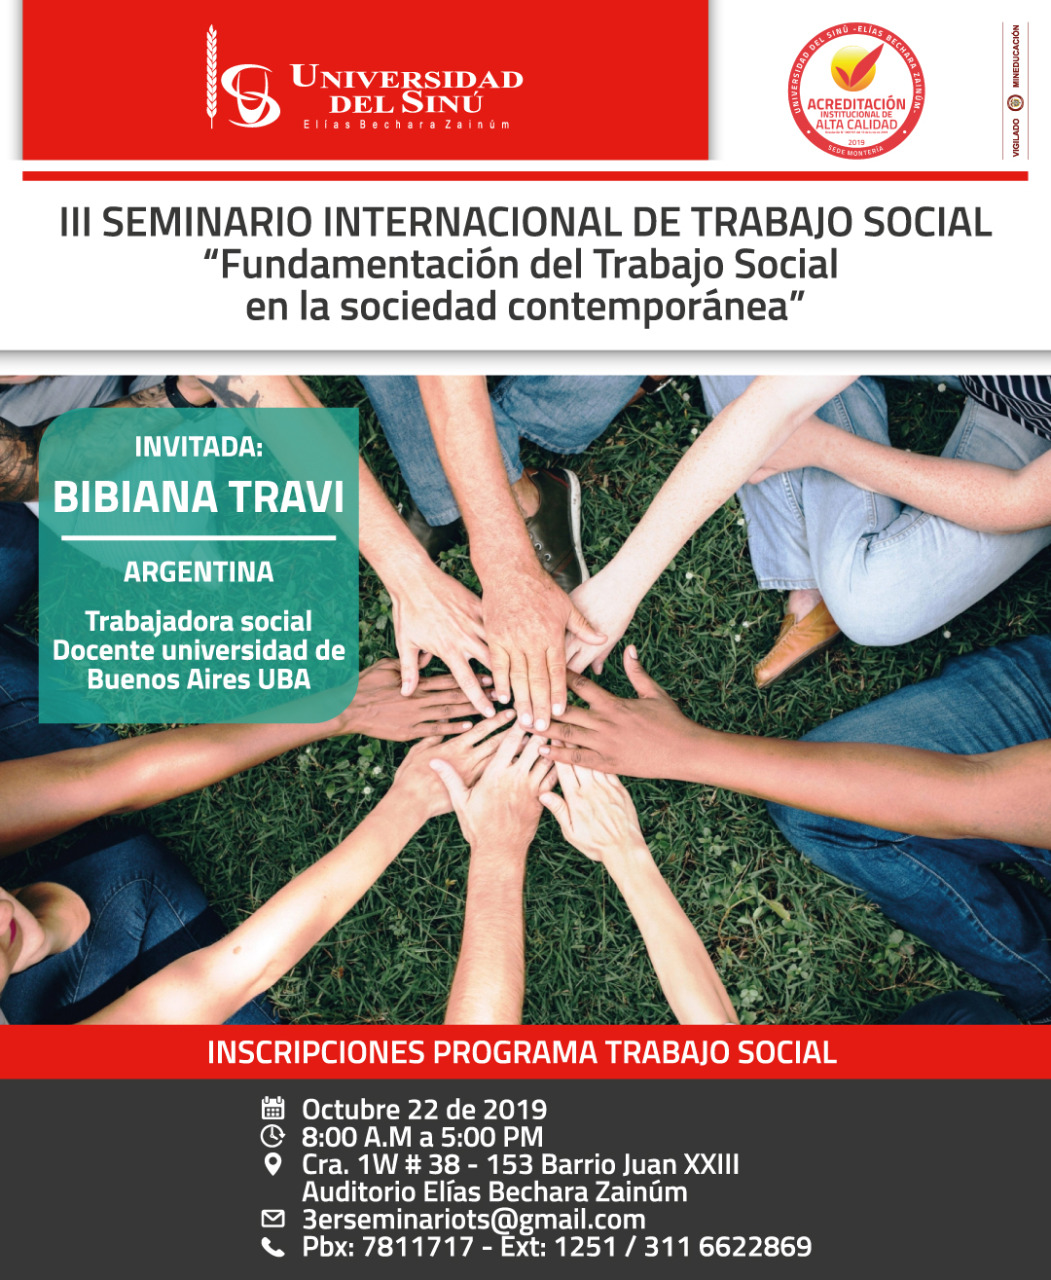 III Seminario internacional de Trabajo Social “fundamentación del Trabajo Social en la sociedad contemporánea”